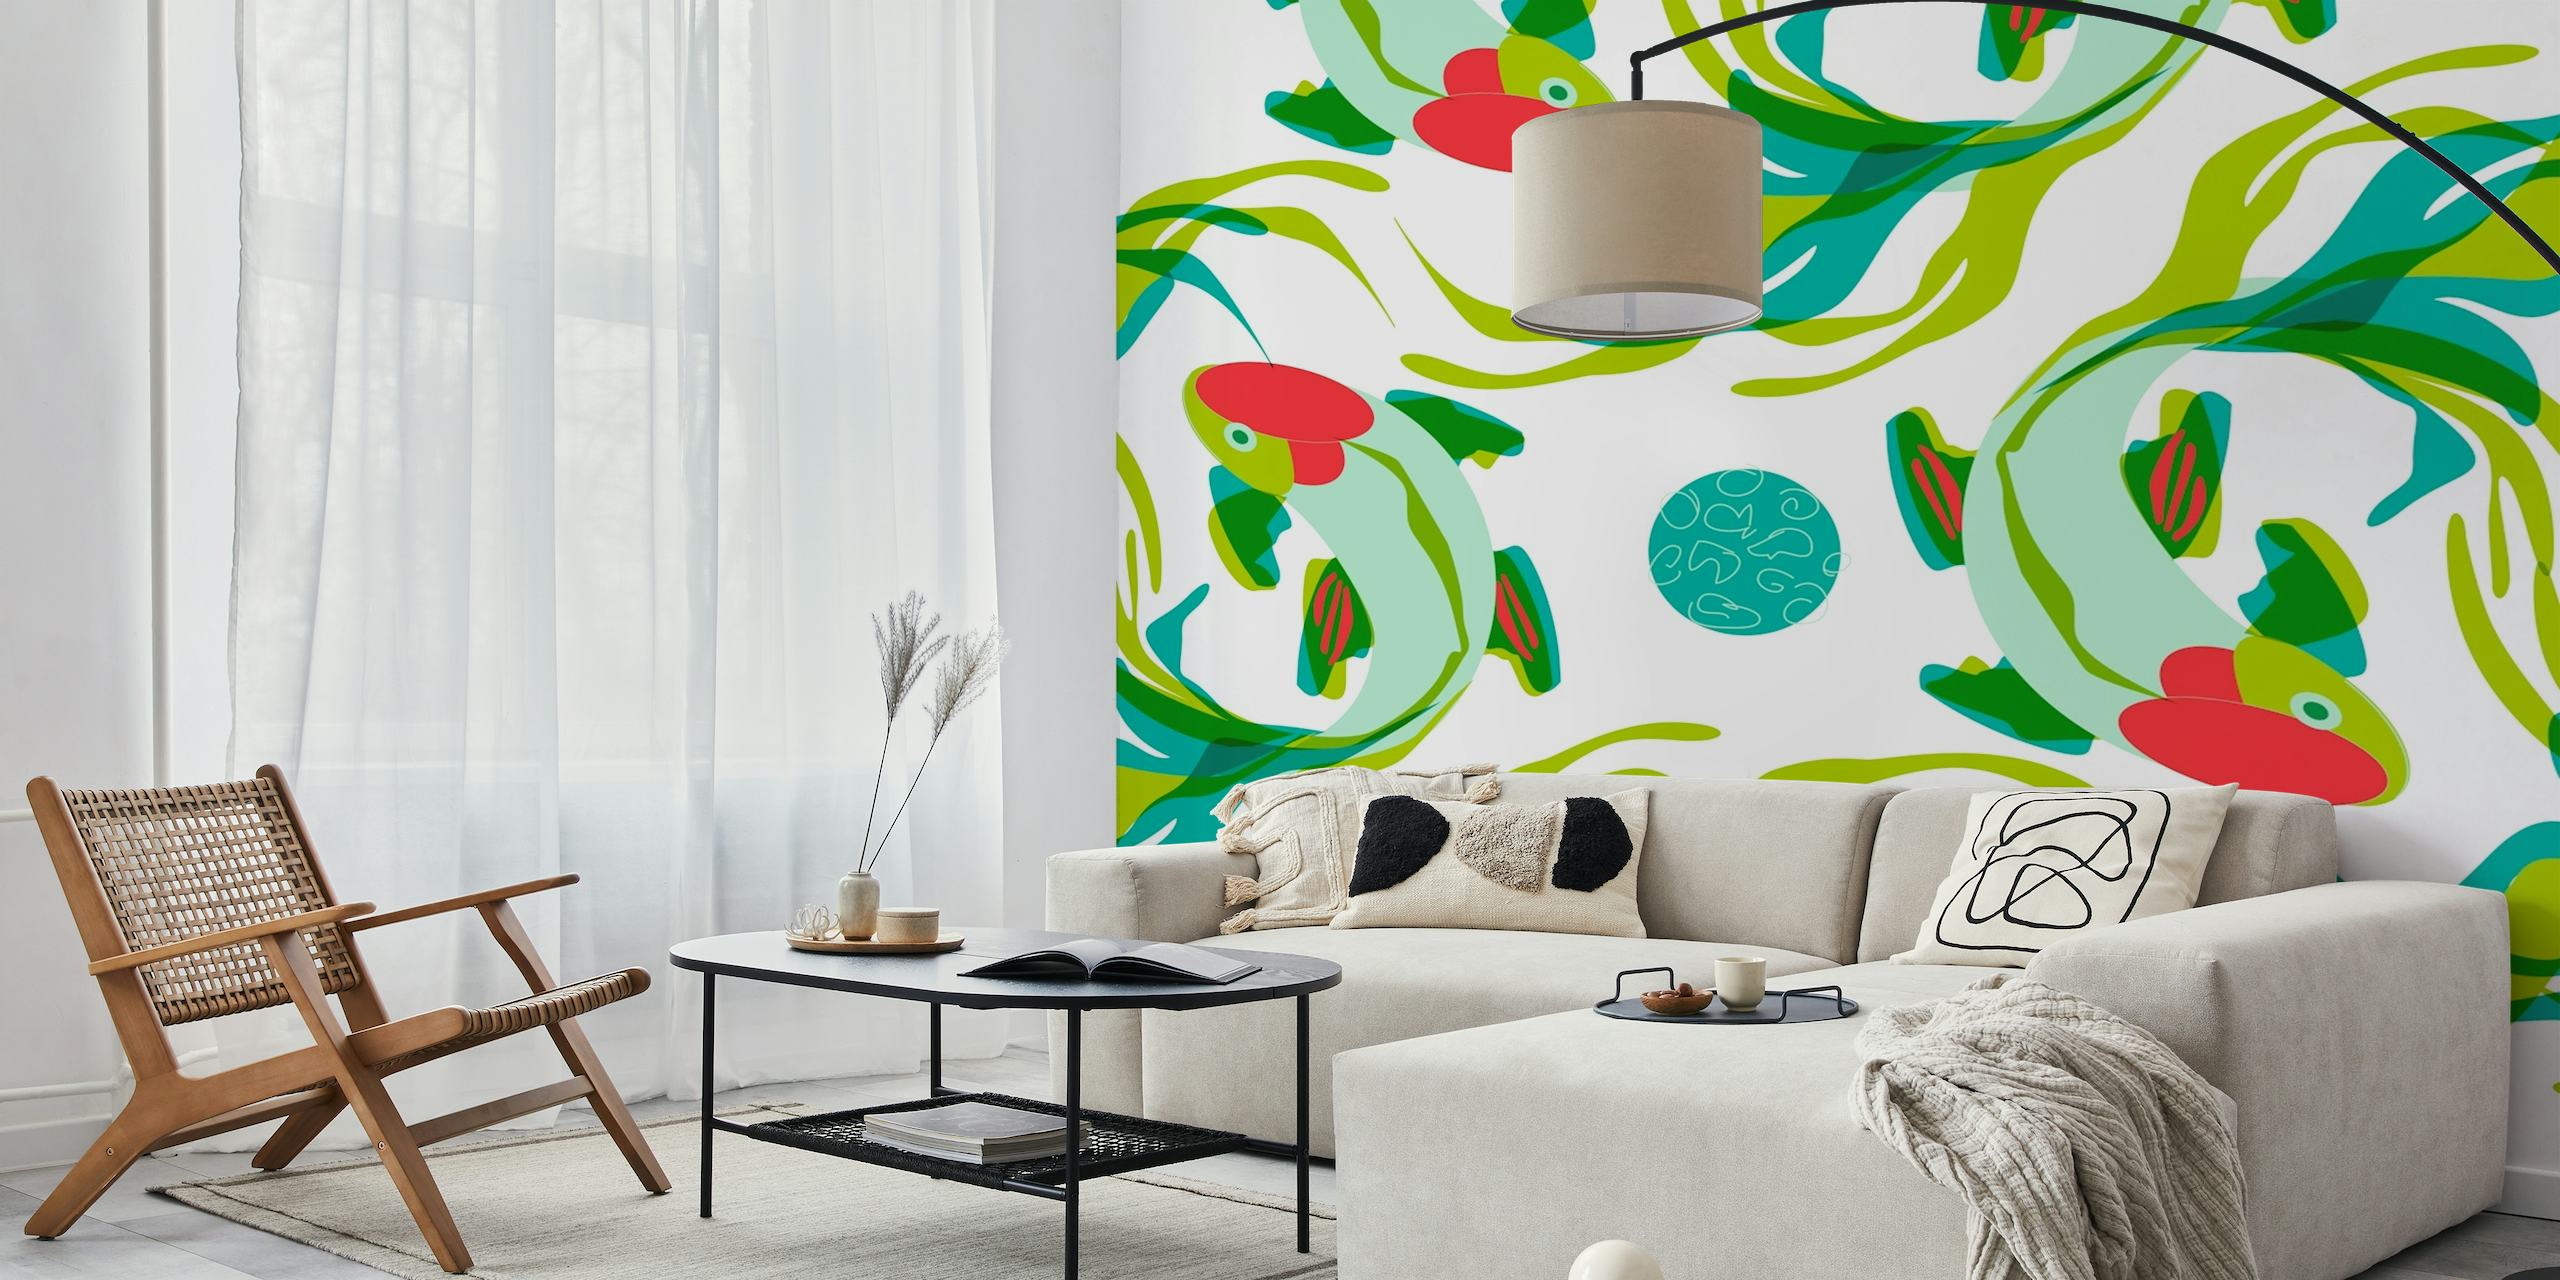 Umjetnička zidna slika s ribom koi i zelenilom za mirno uređenje interijera.